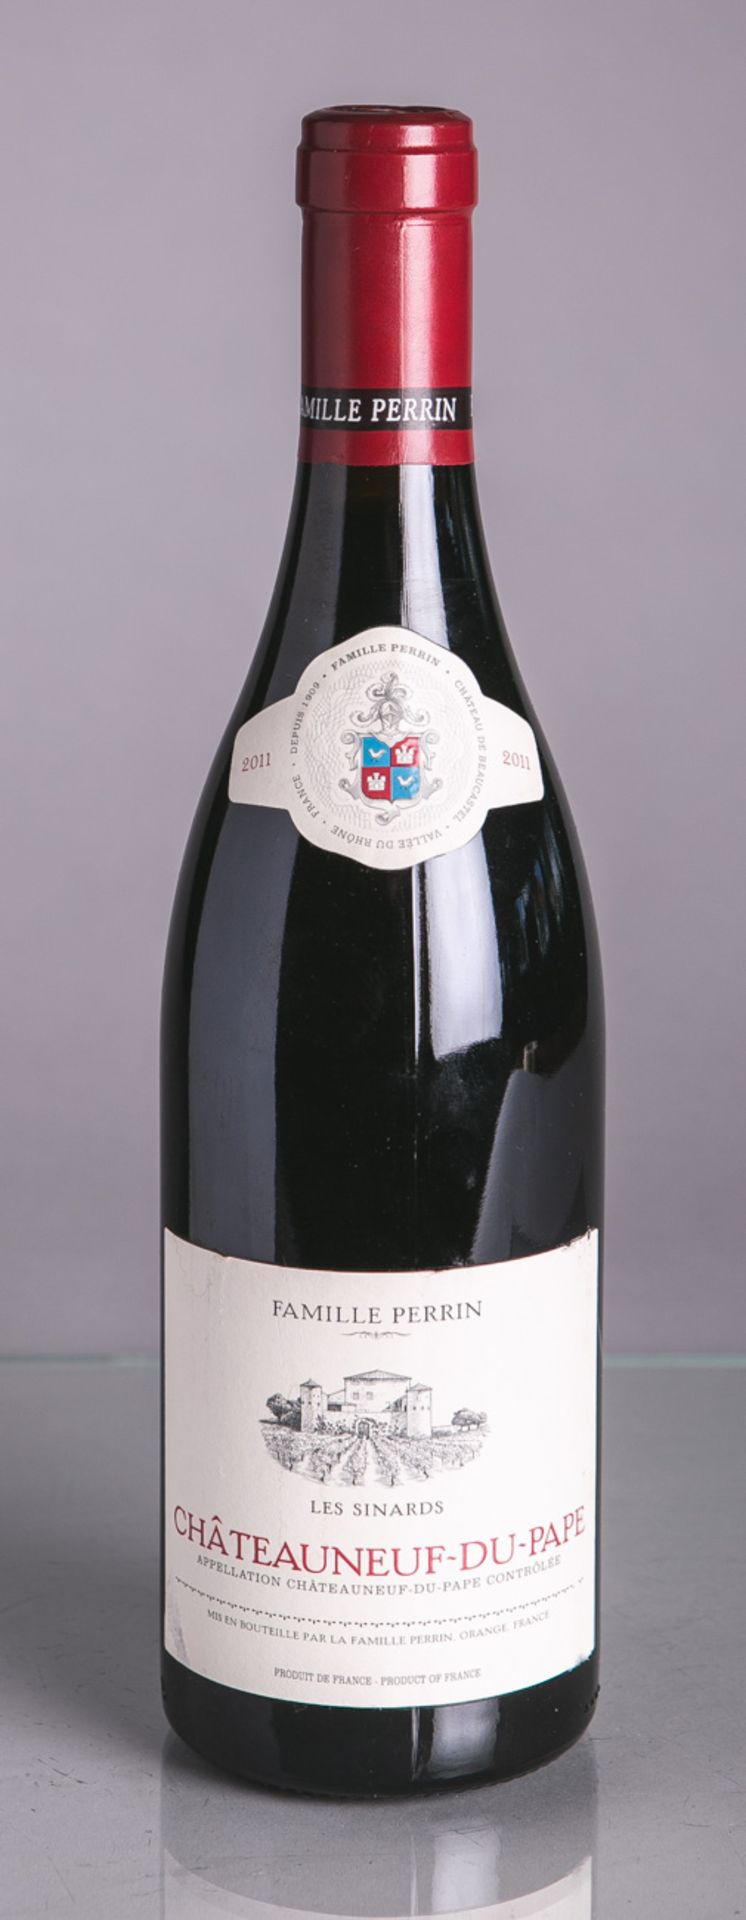 1 Flasche von Chateauneuf-Du-Pape, , Familie Perrin, Les Sinards (2011), Rotwein, 0,75 L.Im